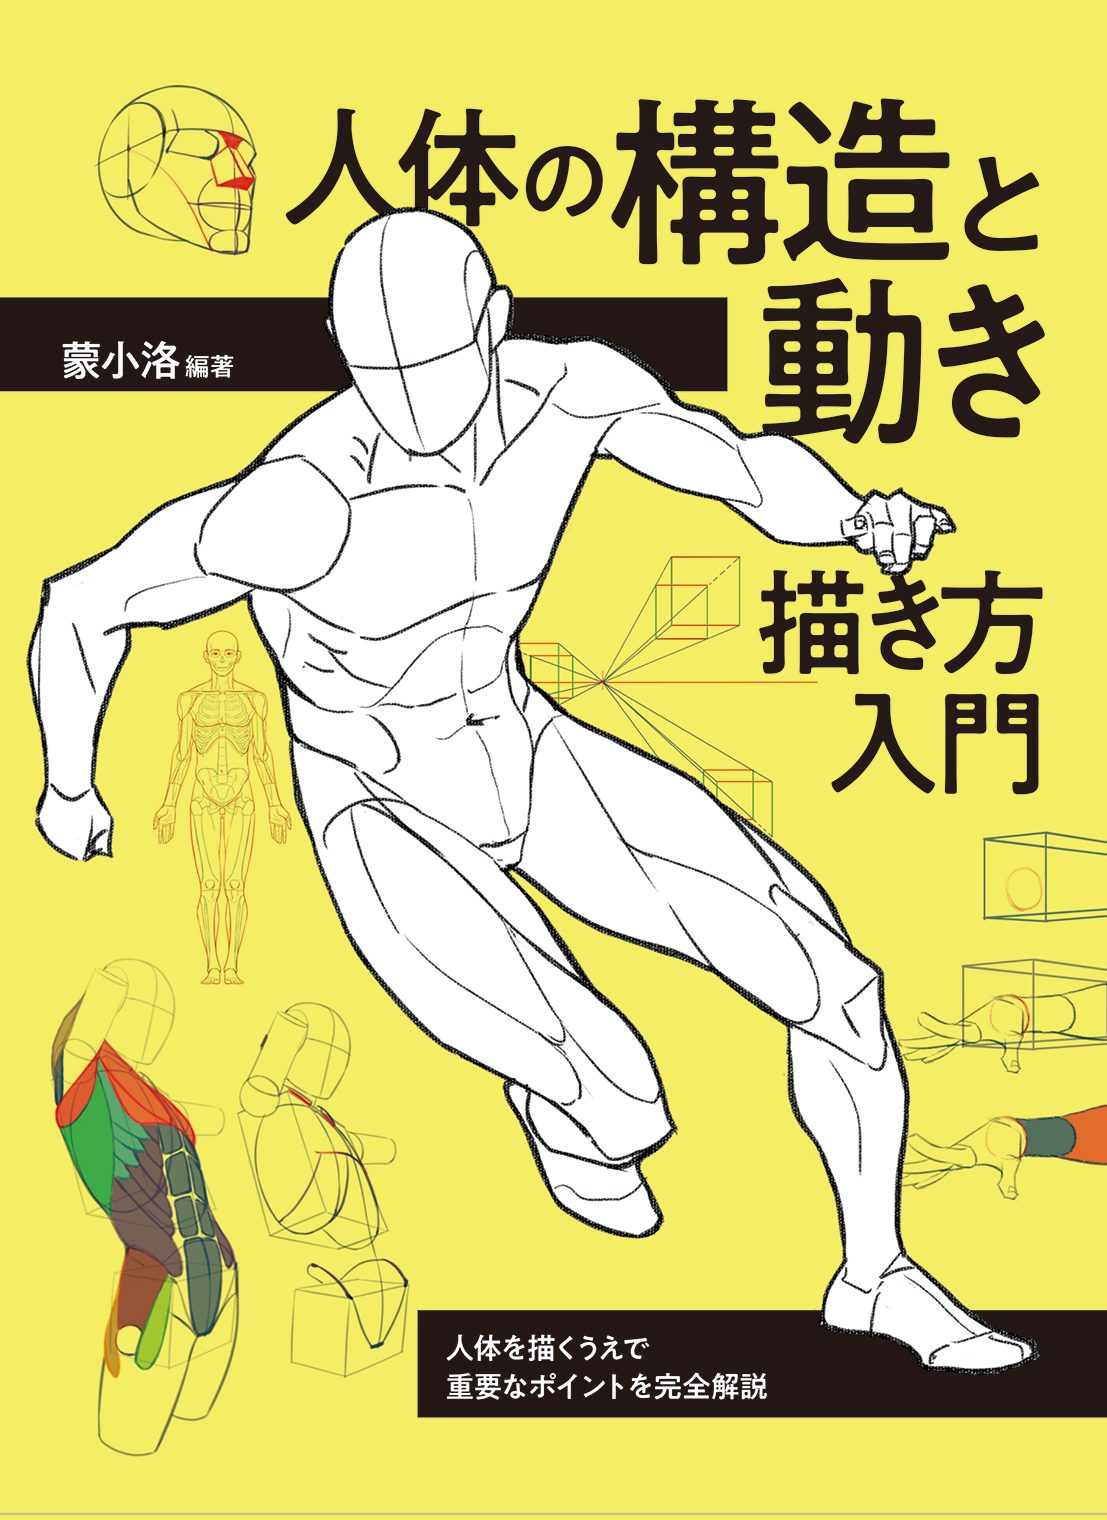 【4月発売】人体の構造と動き 描き方入門 人体を描くうえで重要なポイントを完全解説